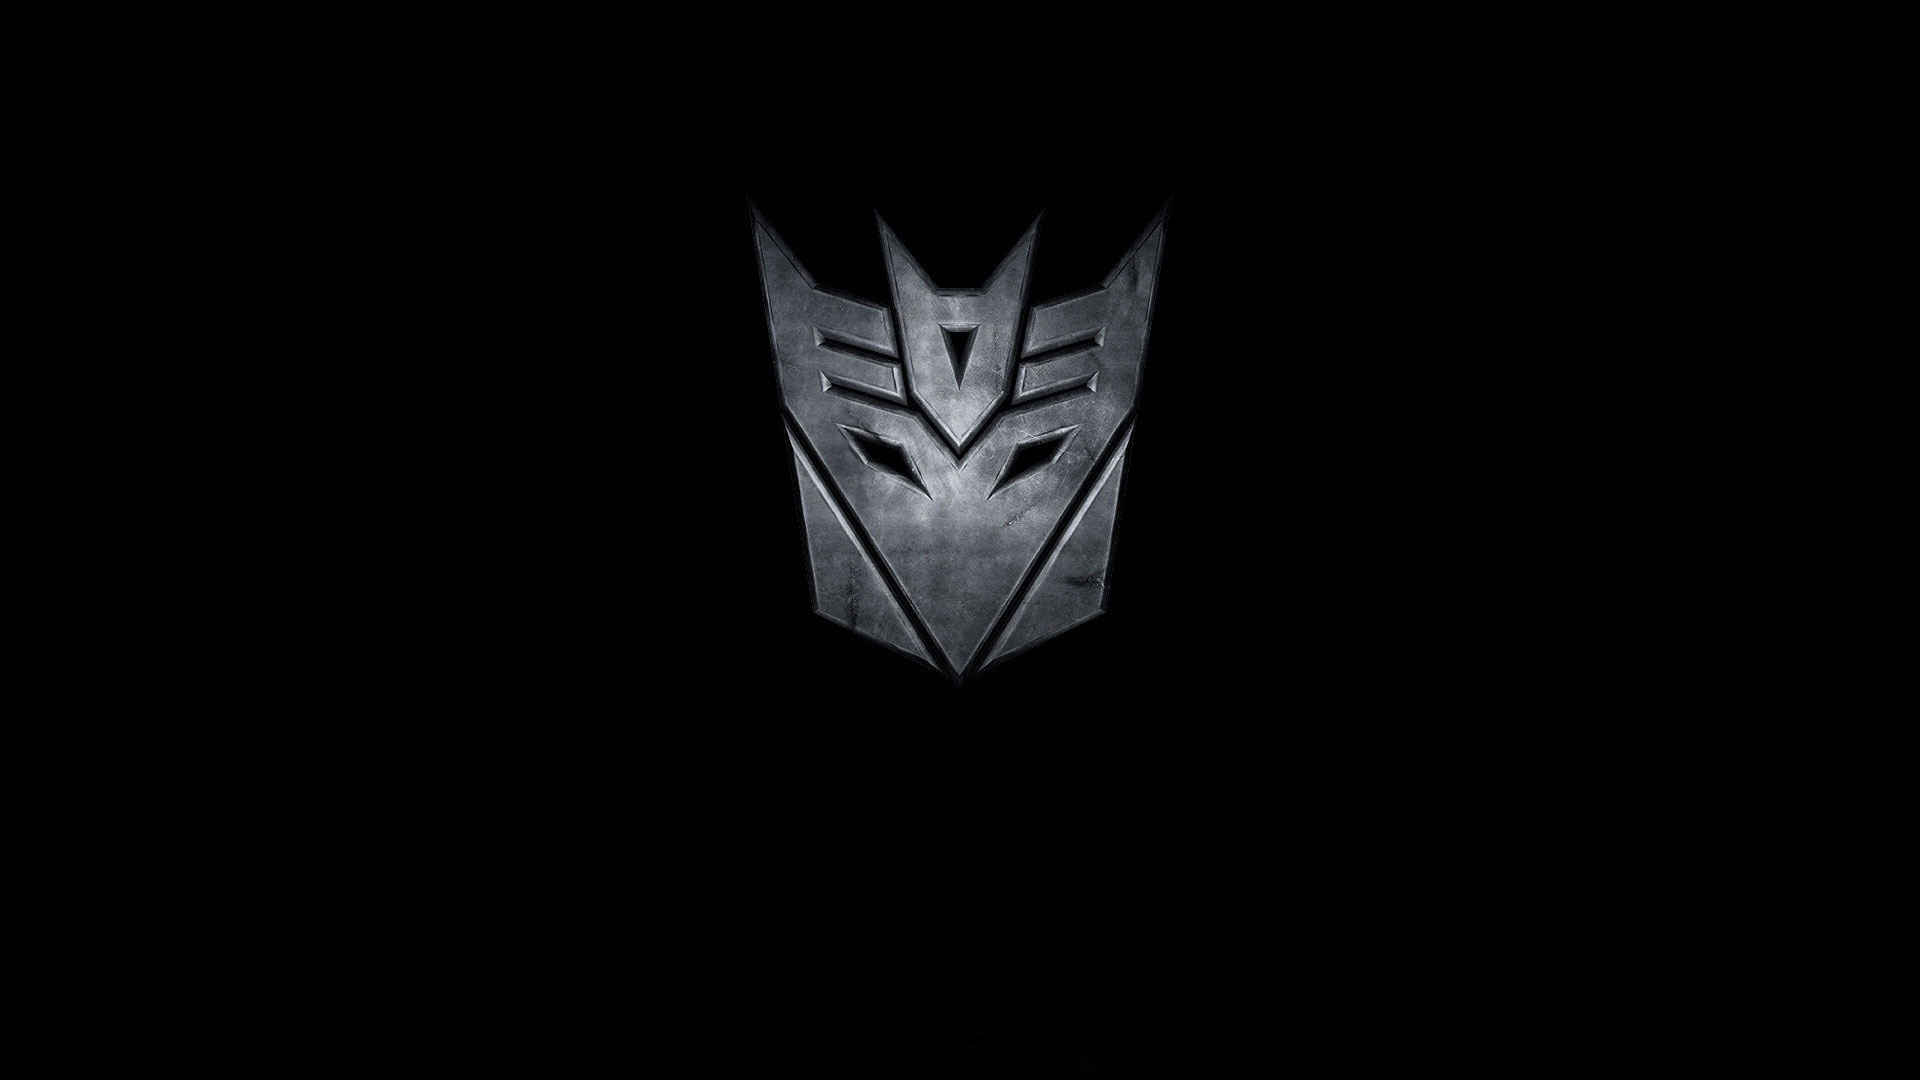 Transformers Decepticons Wallpaper